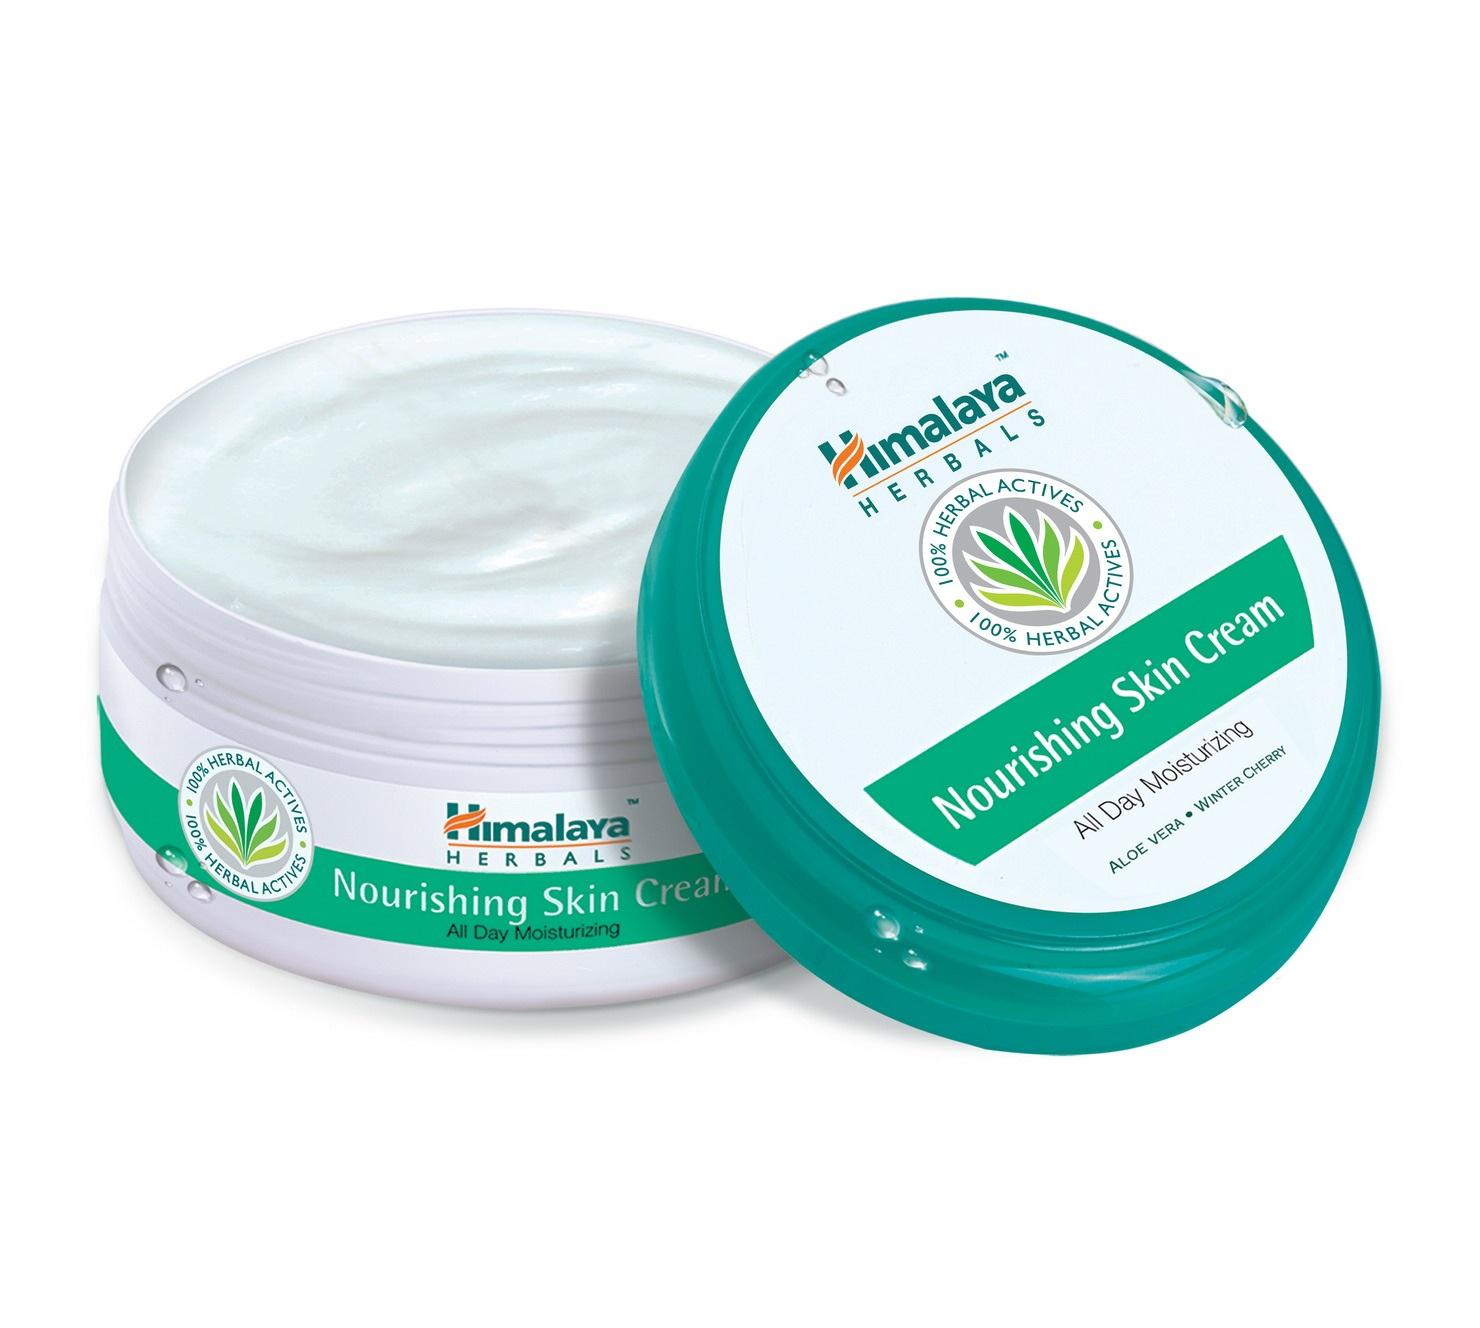 Гималаи для лица. Nourishing Skin Cream Himalaya. Крем для лица Хималая 50 мл. Nourishing Skin Cream Himalaya 50 ml.